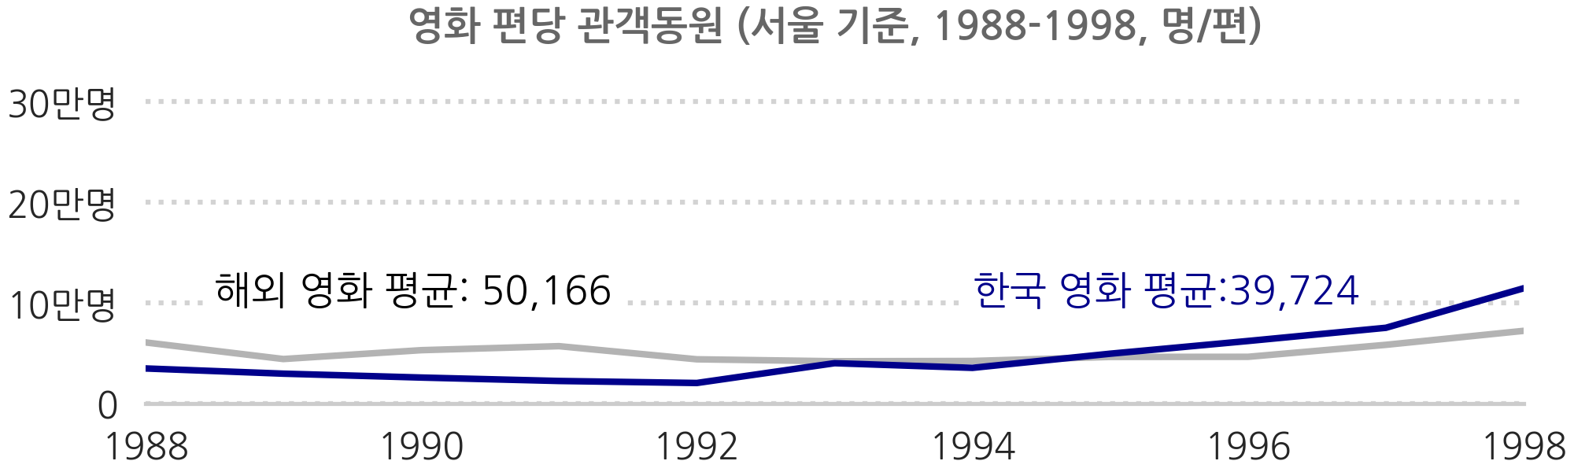 영화 편당 관객동원 해외영화 평균 50,166 한국영화 평균 39,724